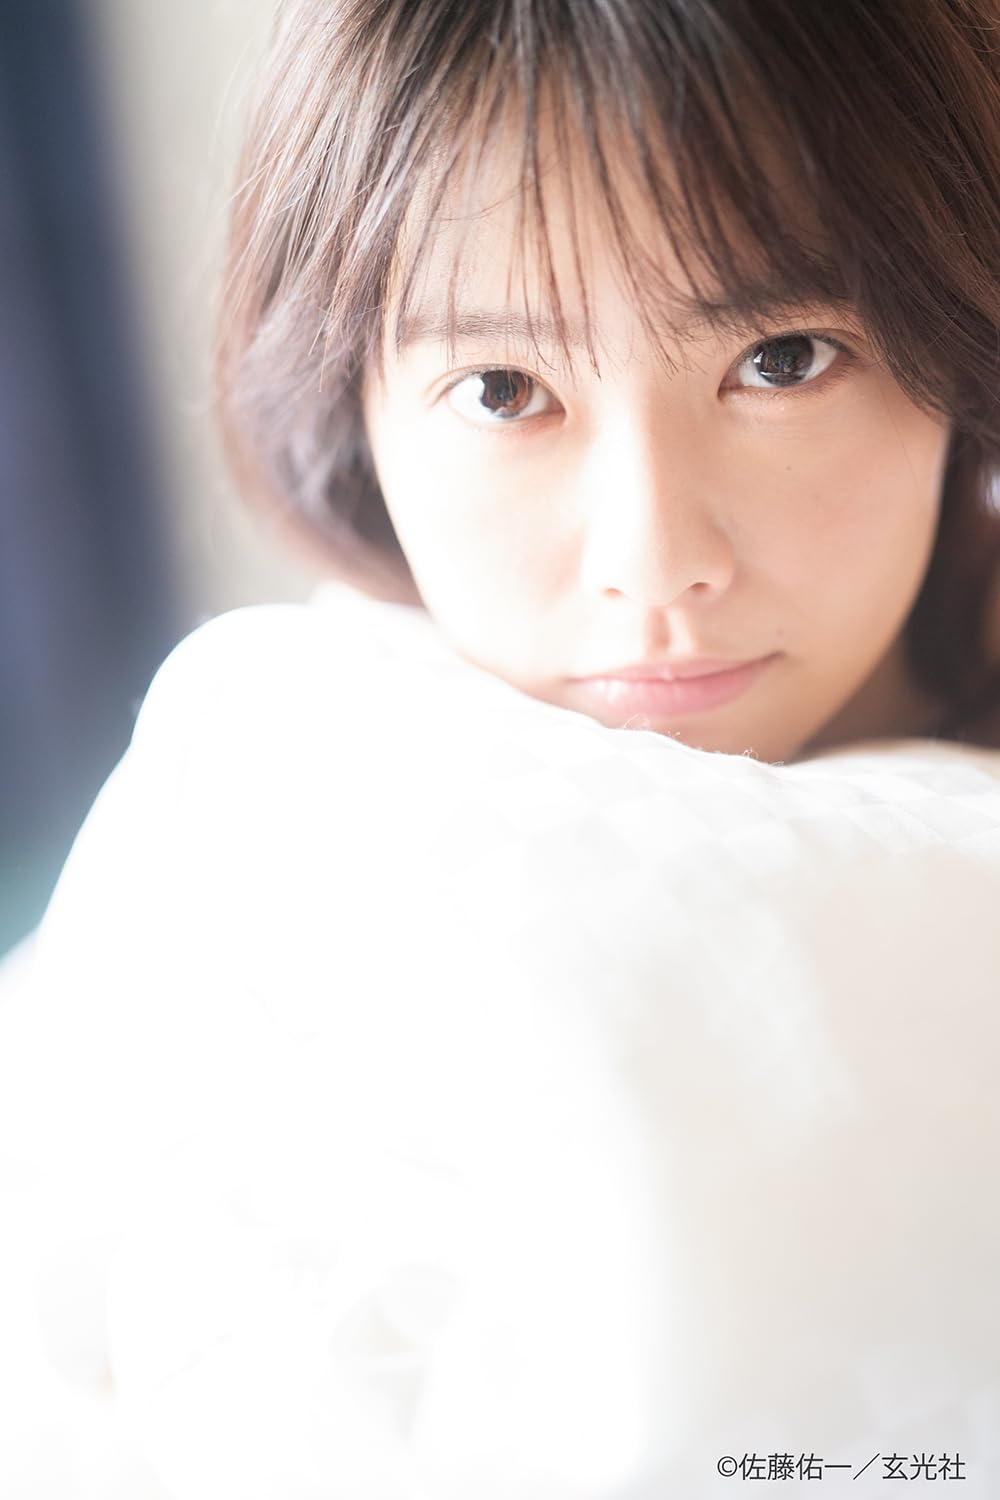 AKB48 오다 에리나 1st 사진집 - 청춘의 시간표